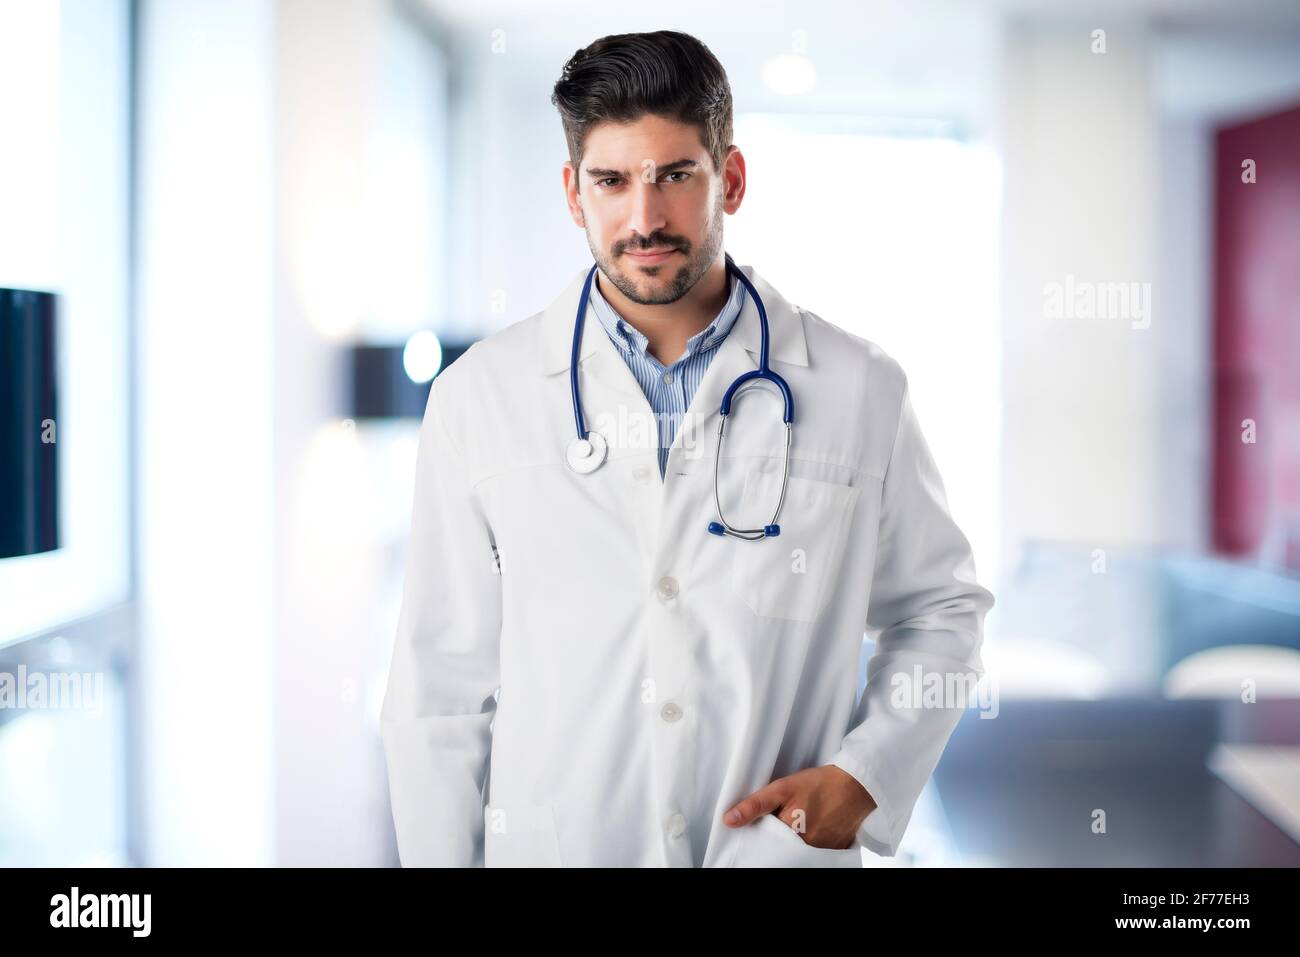 Portrait de médecin masculin dans le foyer de l'hôpital. Banque D'Images